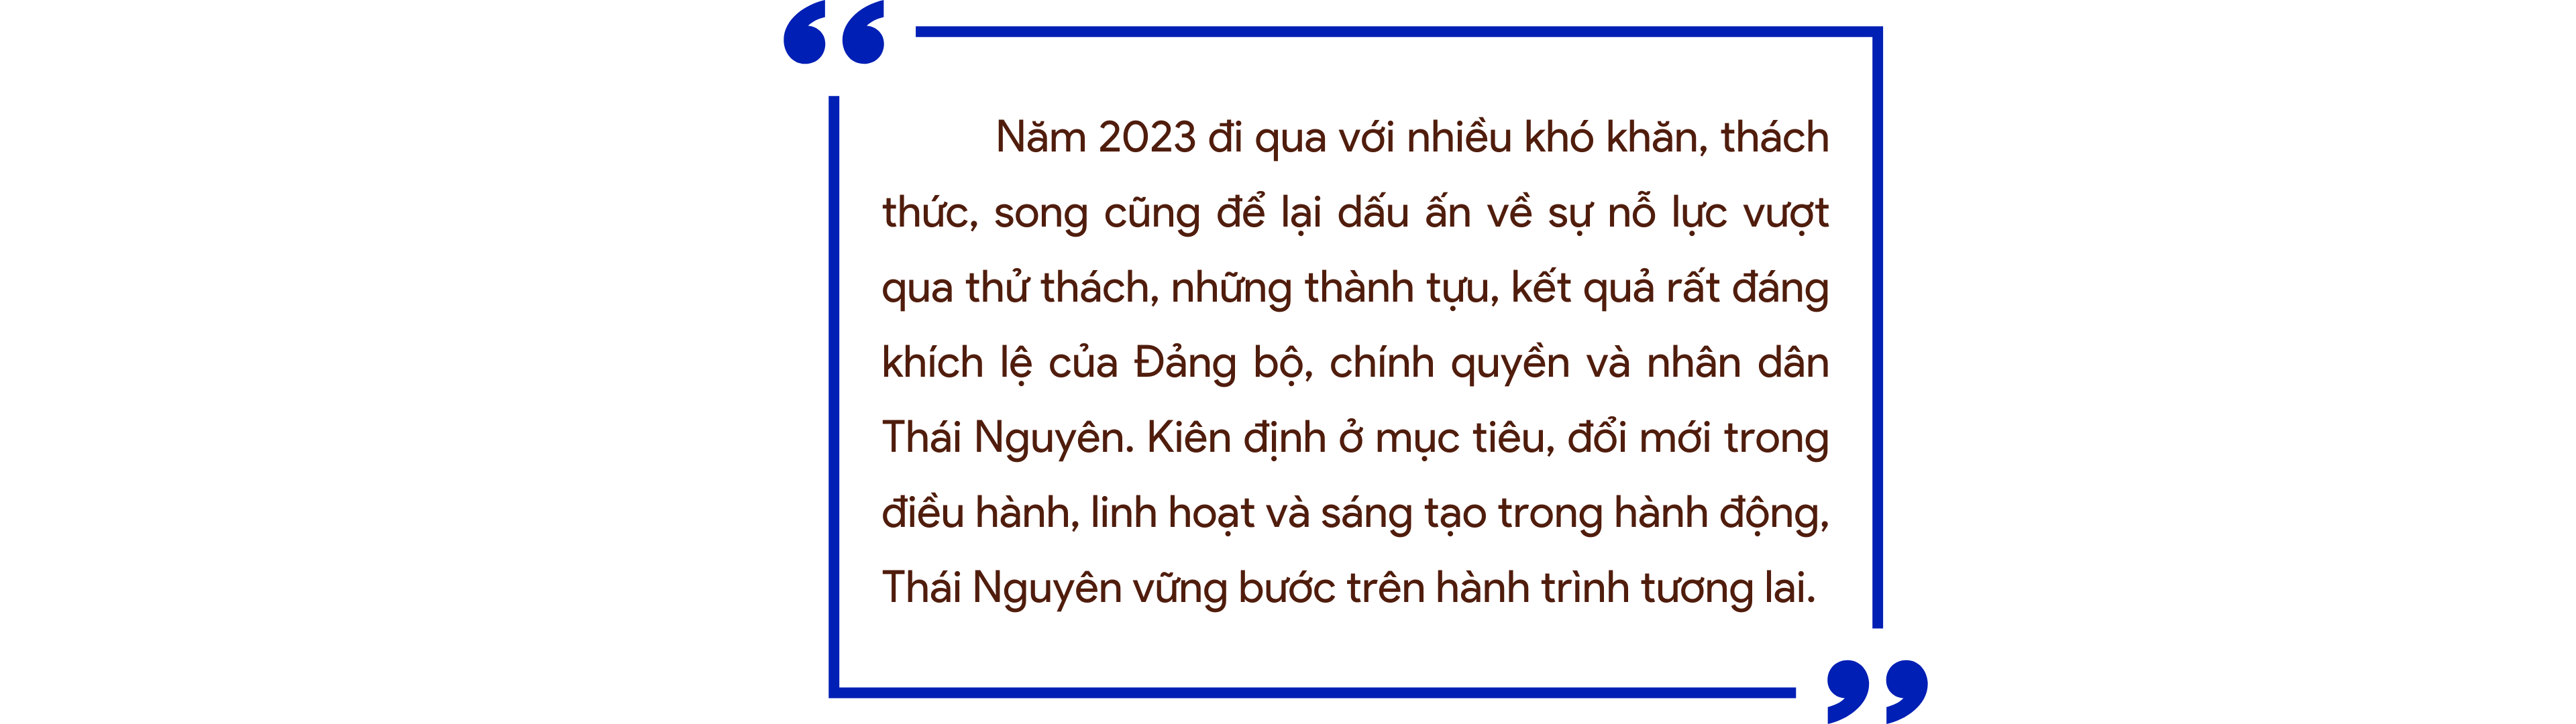 [Megastory] Thái Nguyên đi qua năm 2023